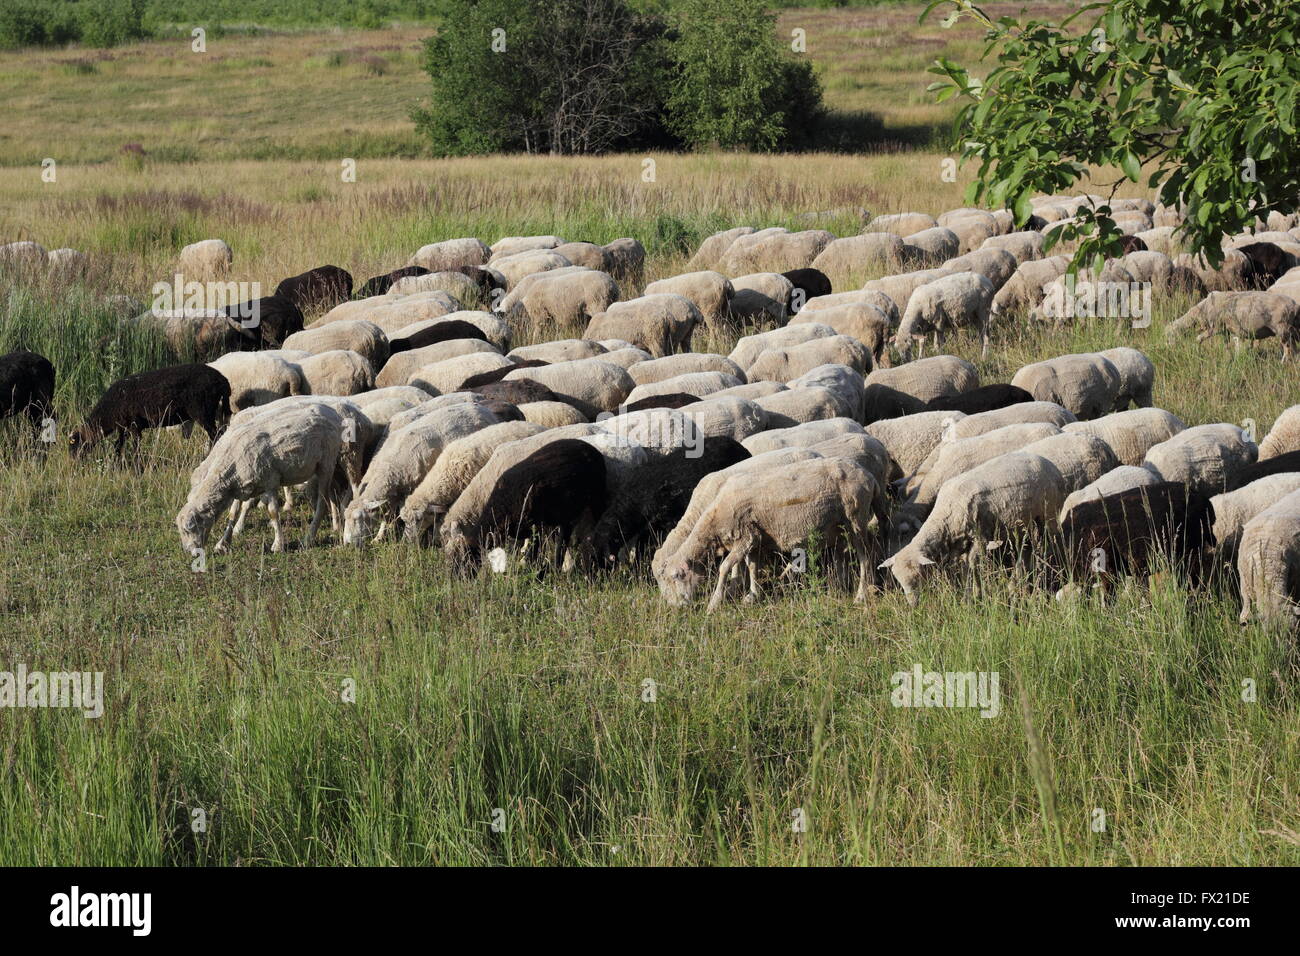 Eine Herde von Schafen auf dem grünen Rasen-Foto Stockfoto